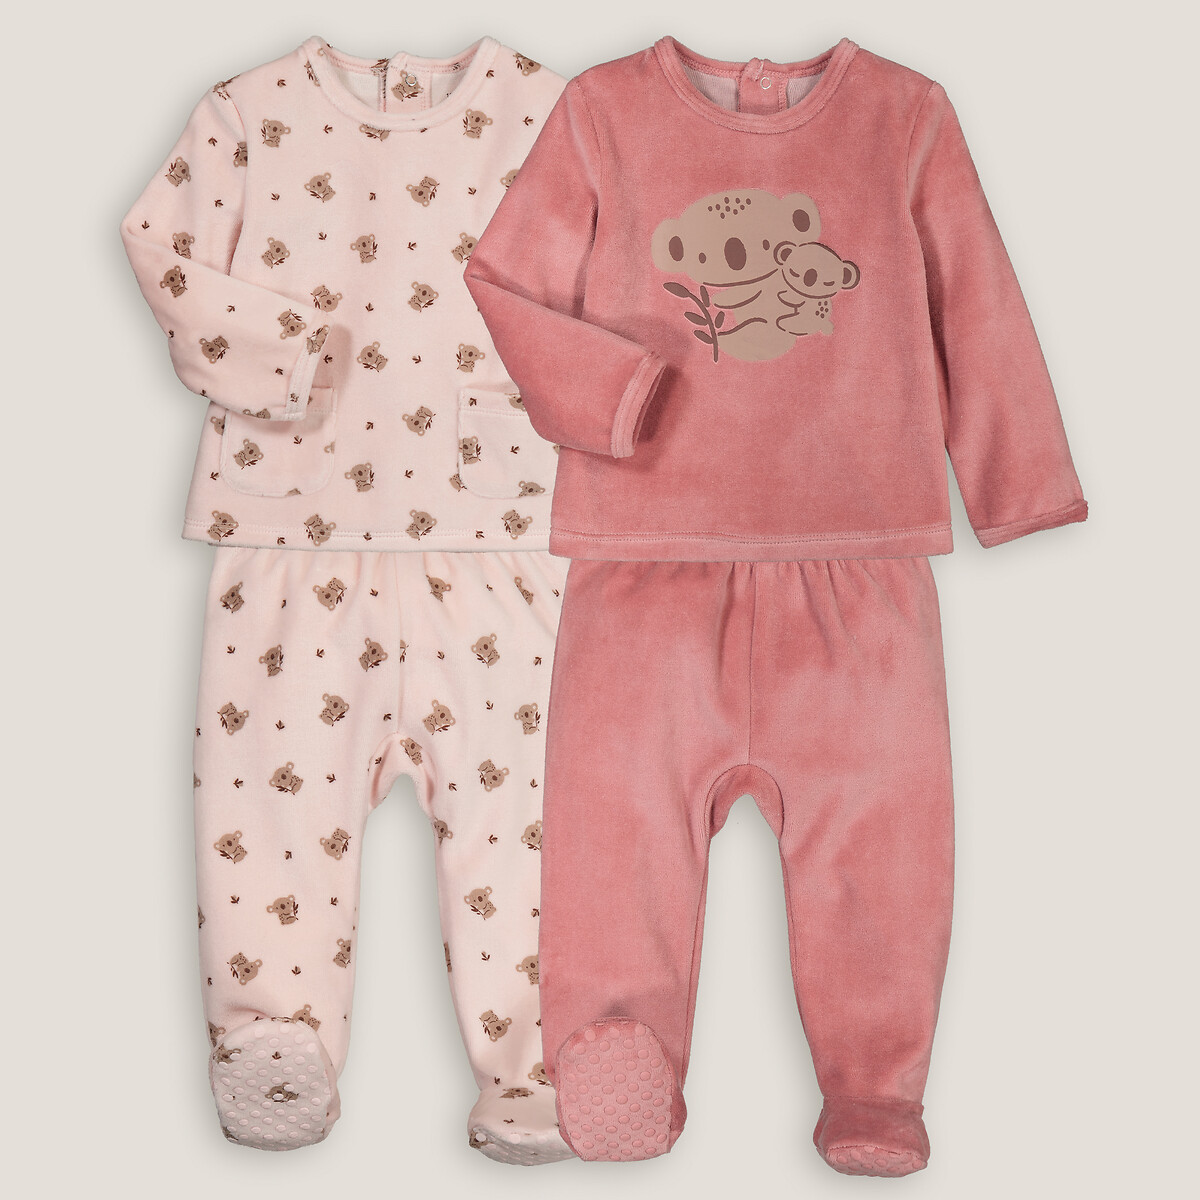 Комплект из двух пижам раздельных из велюра принт коалы  1 год - 74 см розовый LaRedoute, размер 1